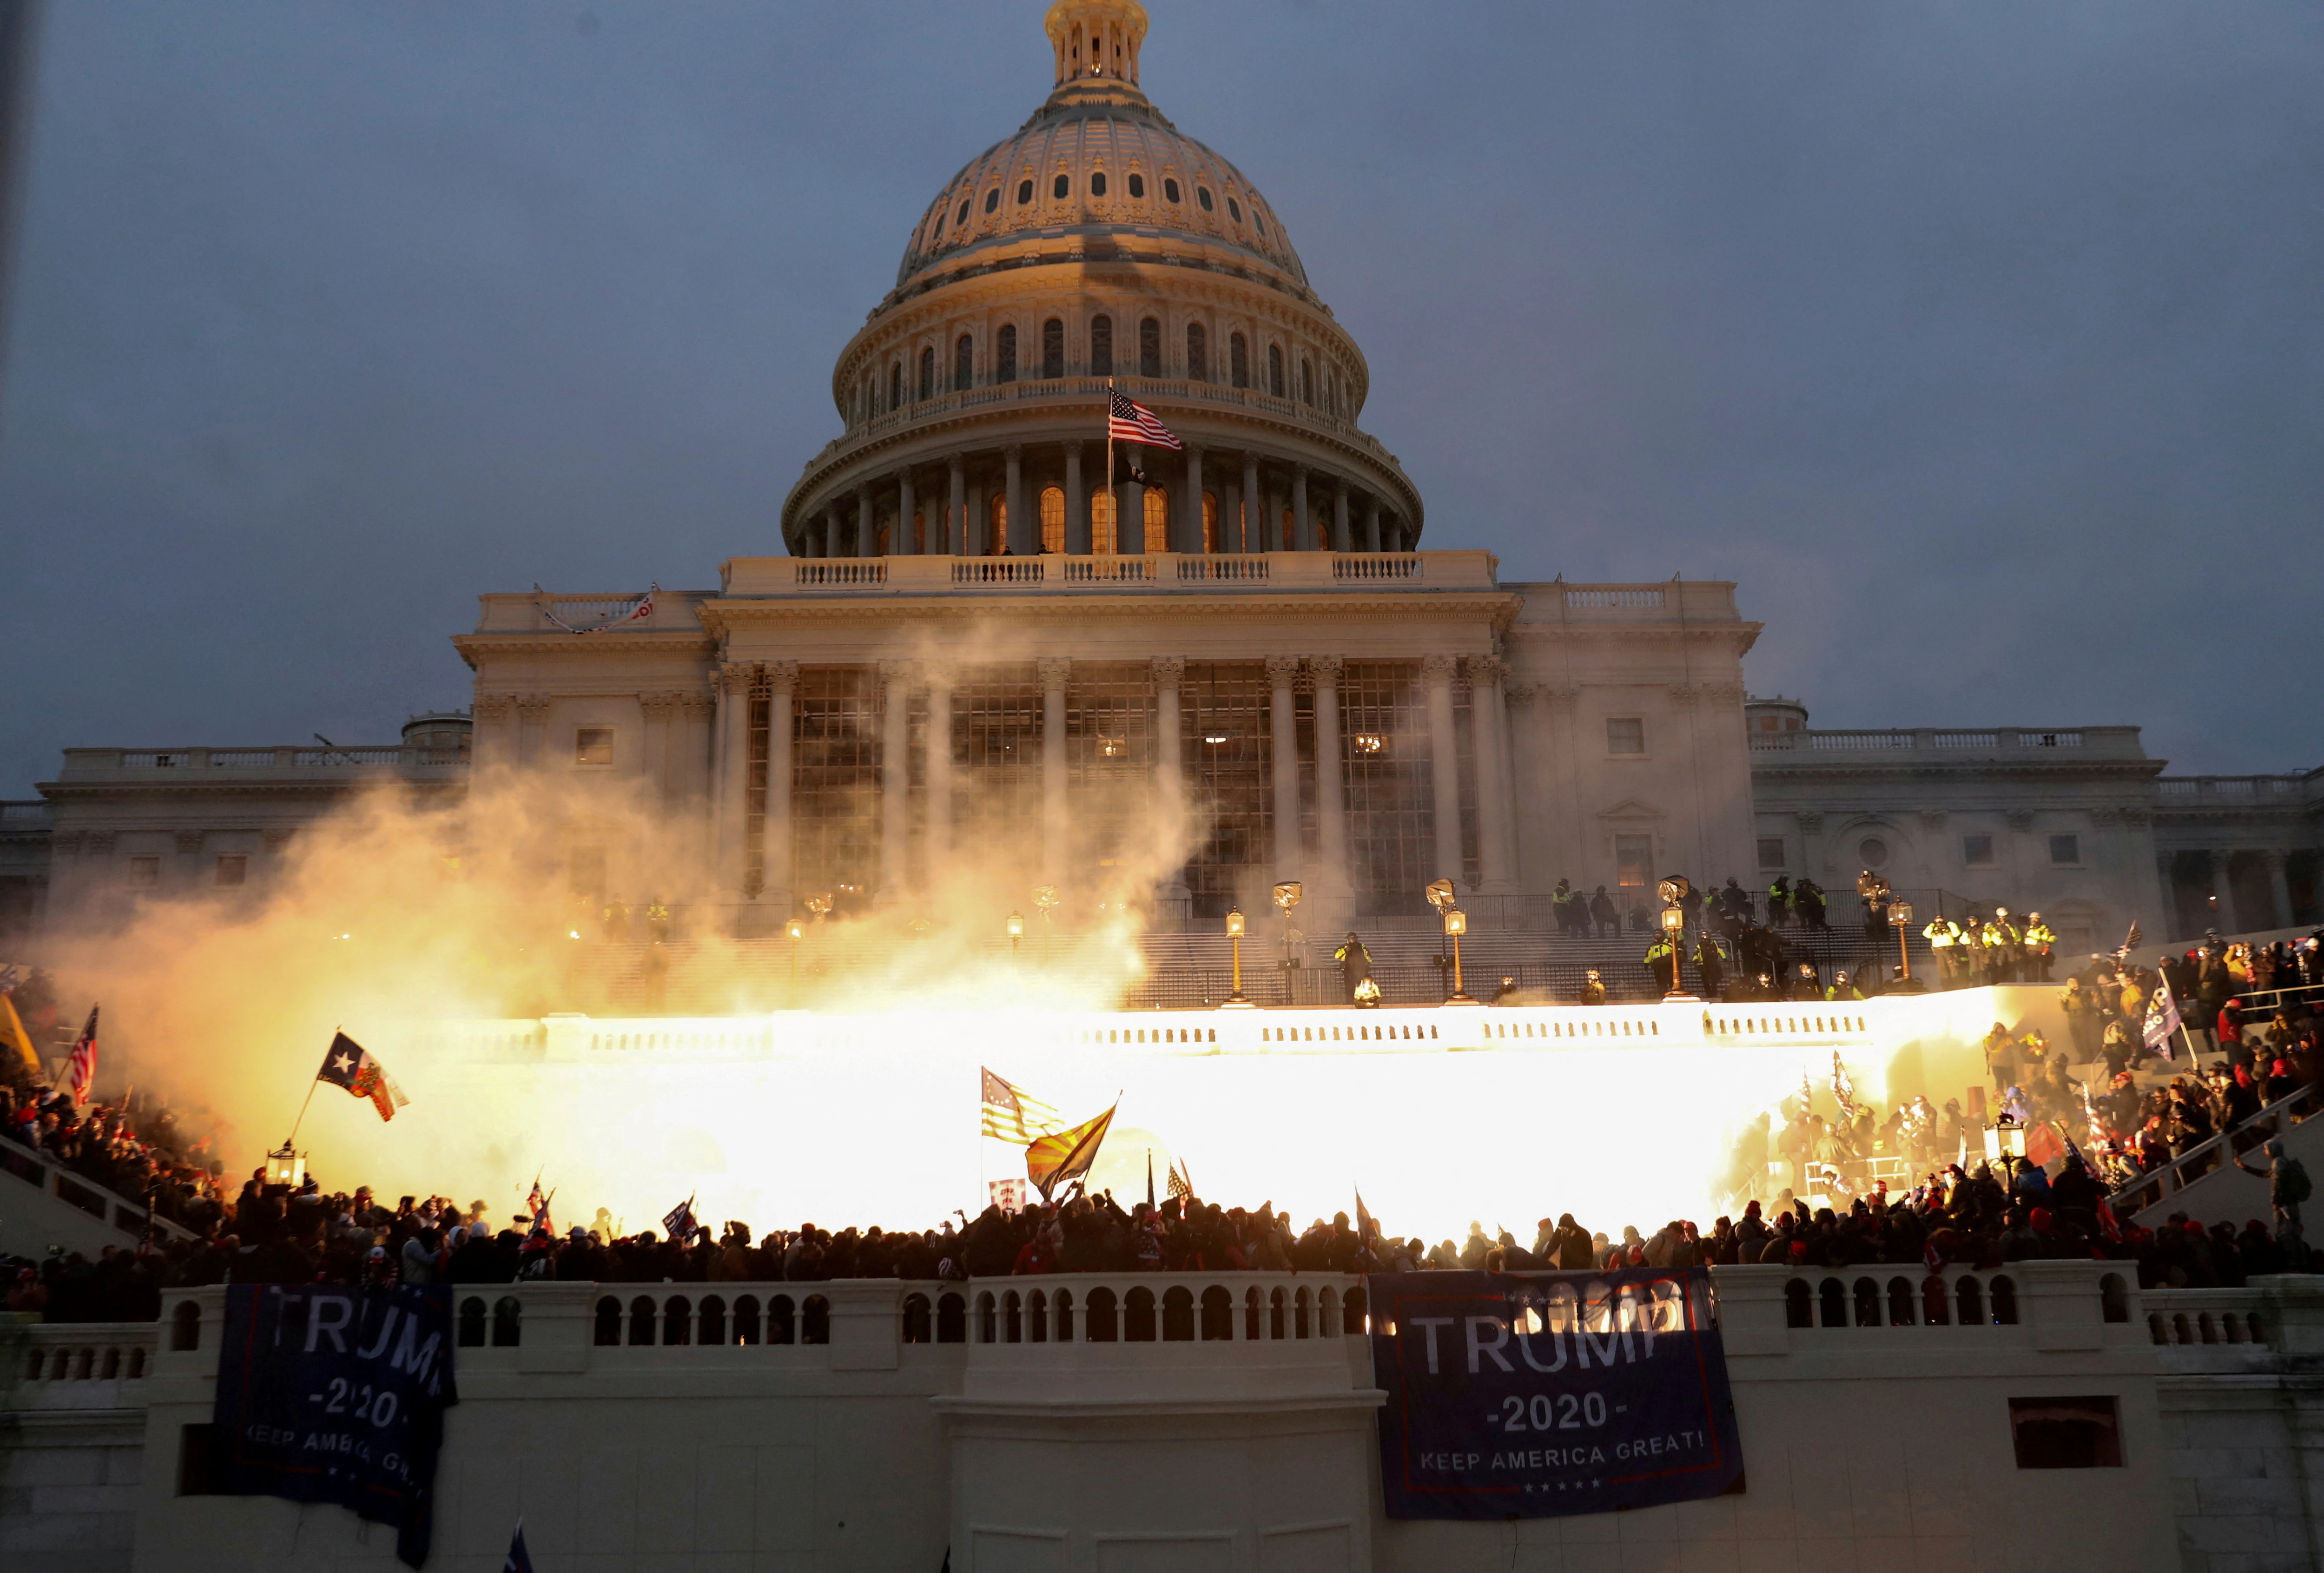 Una explosión causada por una munición policial para evitar que los partidarios del presidente Trump tomen el edificio del Capitolio. 